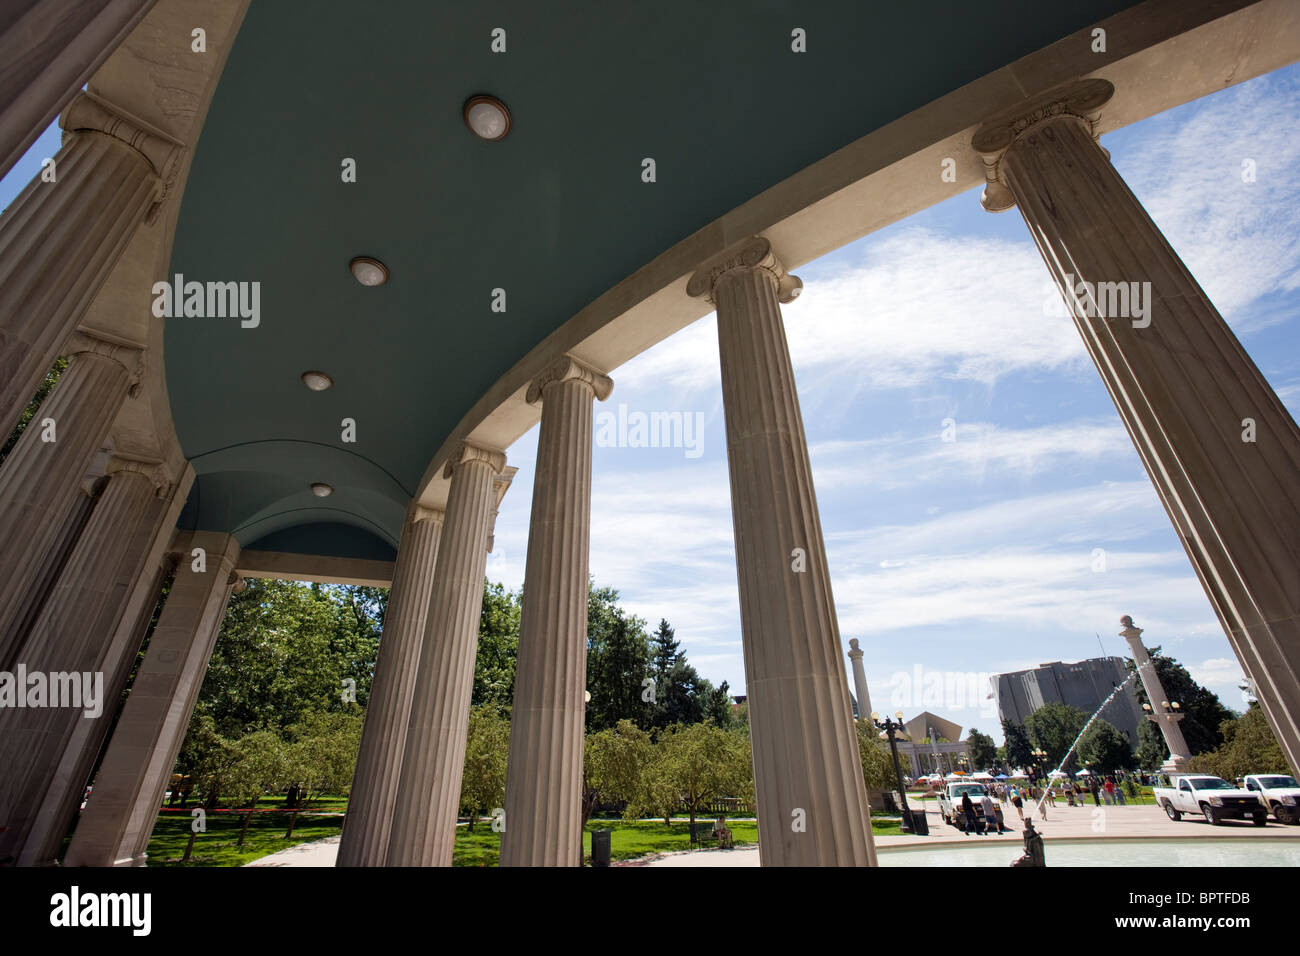 Voorhees Memorial stagno di tenuta, stile neoclassico monumento nel Civic Center Park, Denver, Colorado, STATI UNITI D'AMERICA Foto Stock